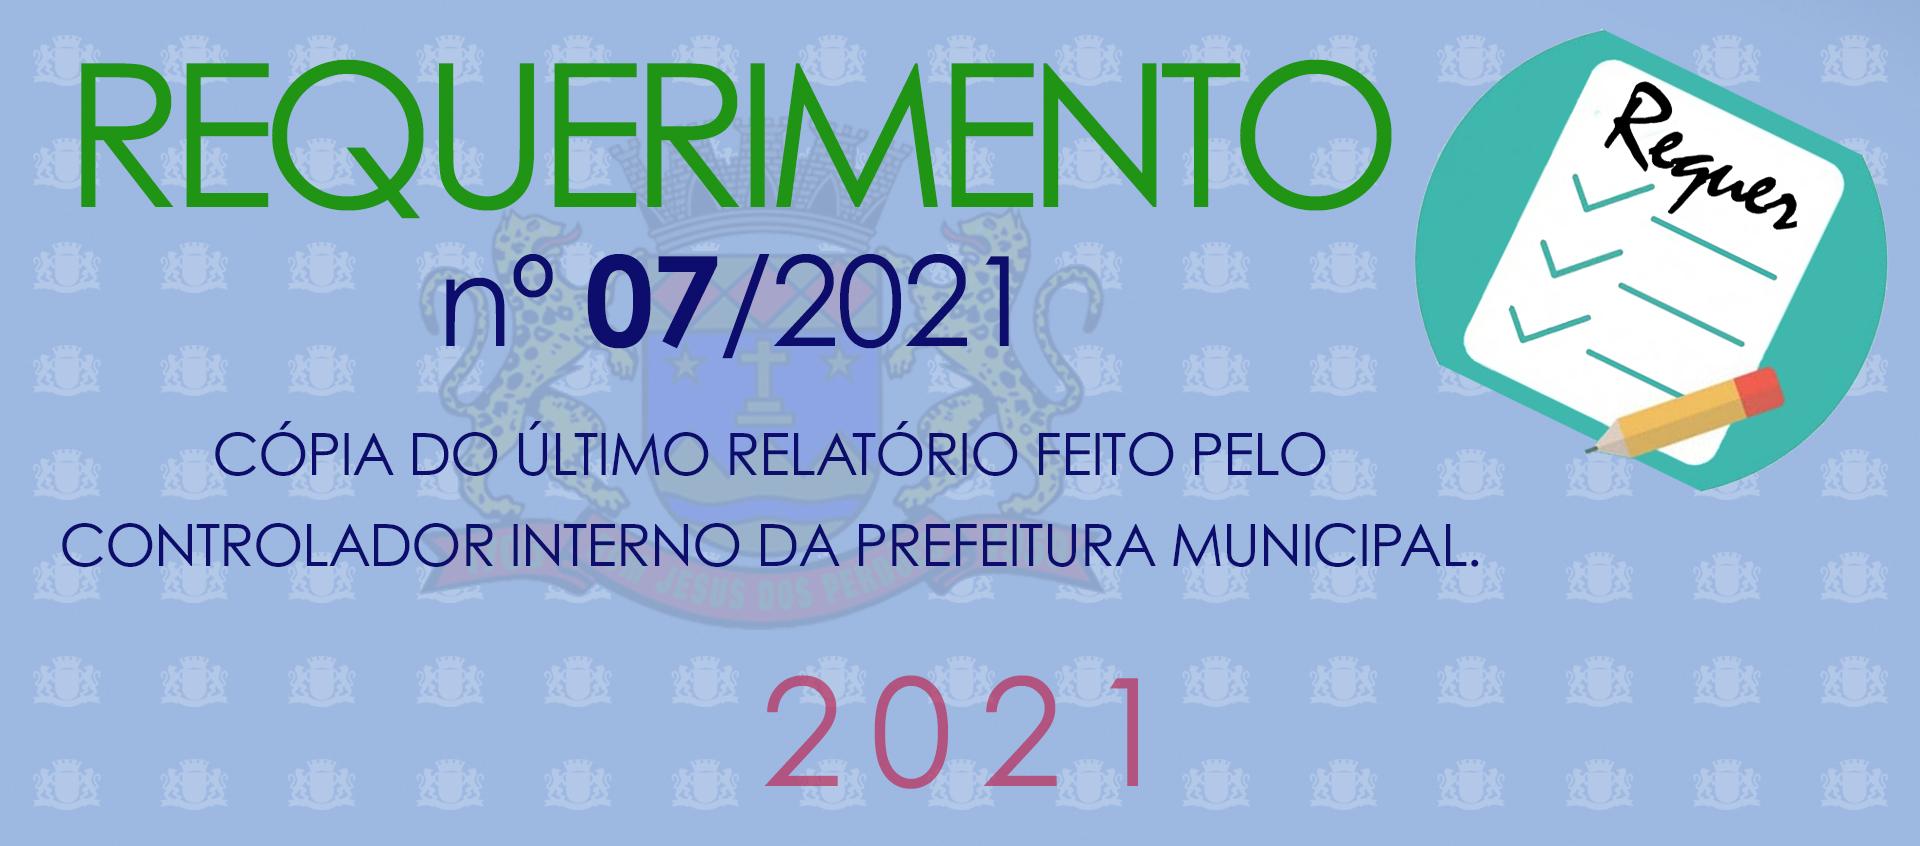 Requerimento nº 07/2021